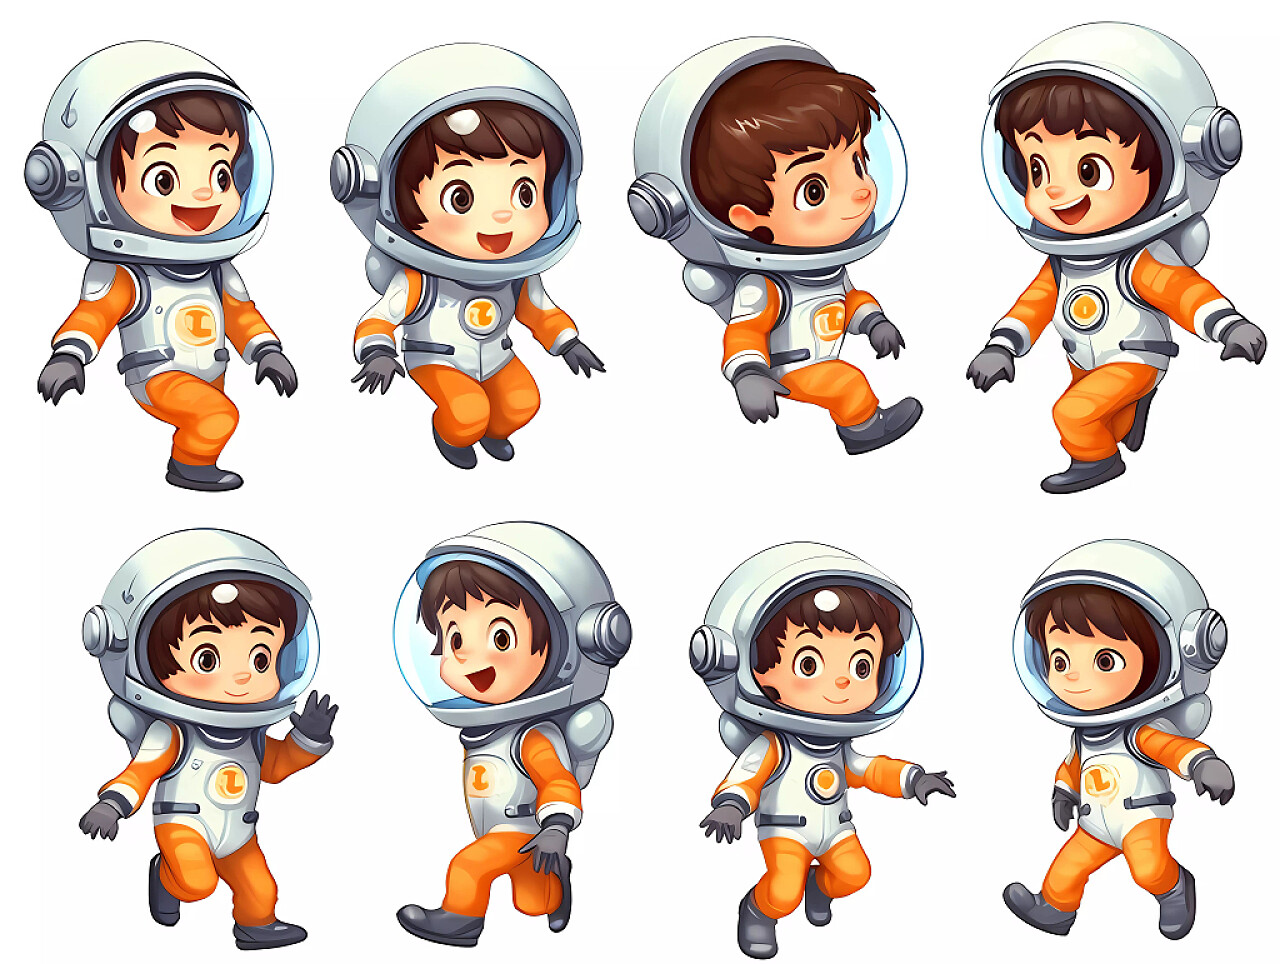 白底卡通可爱小宇航员探索太空表情包